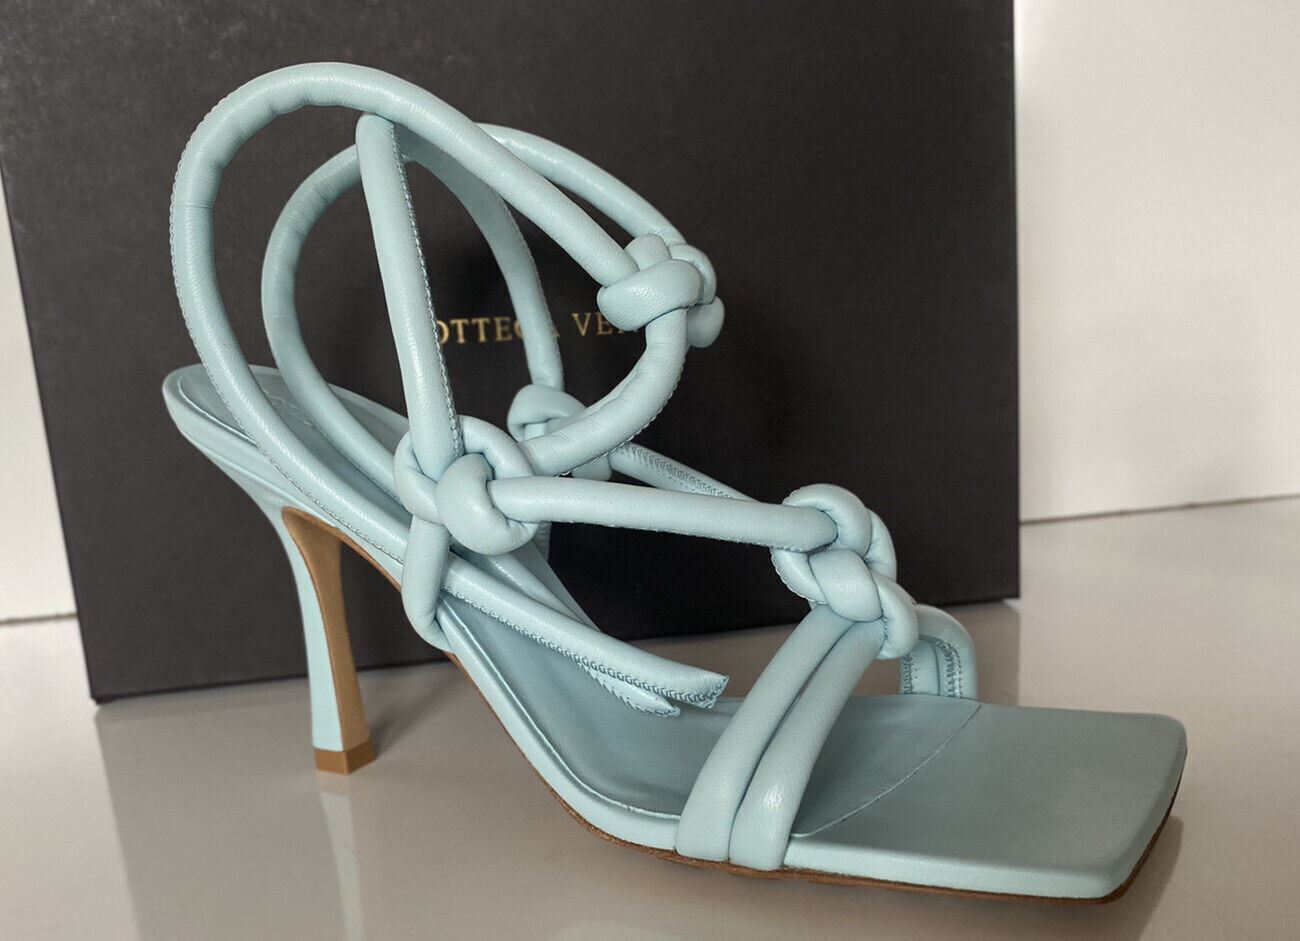 Обувь Bottega Veneta Leather Napa Dream High Vamp Topaz 11, США 592033, стоимость 870 долларов США. 